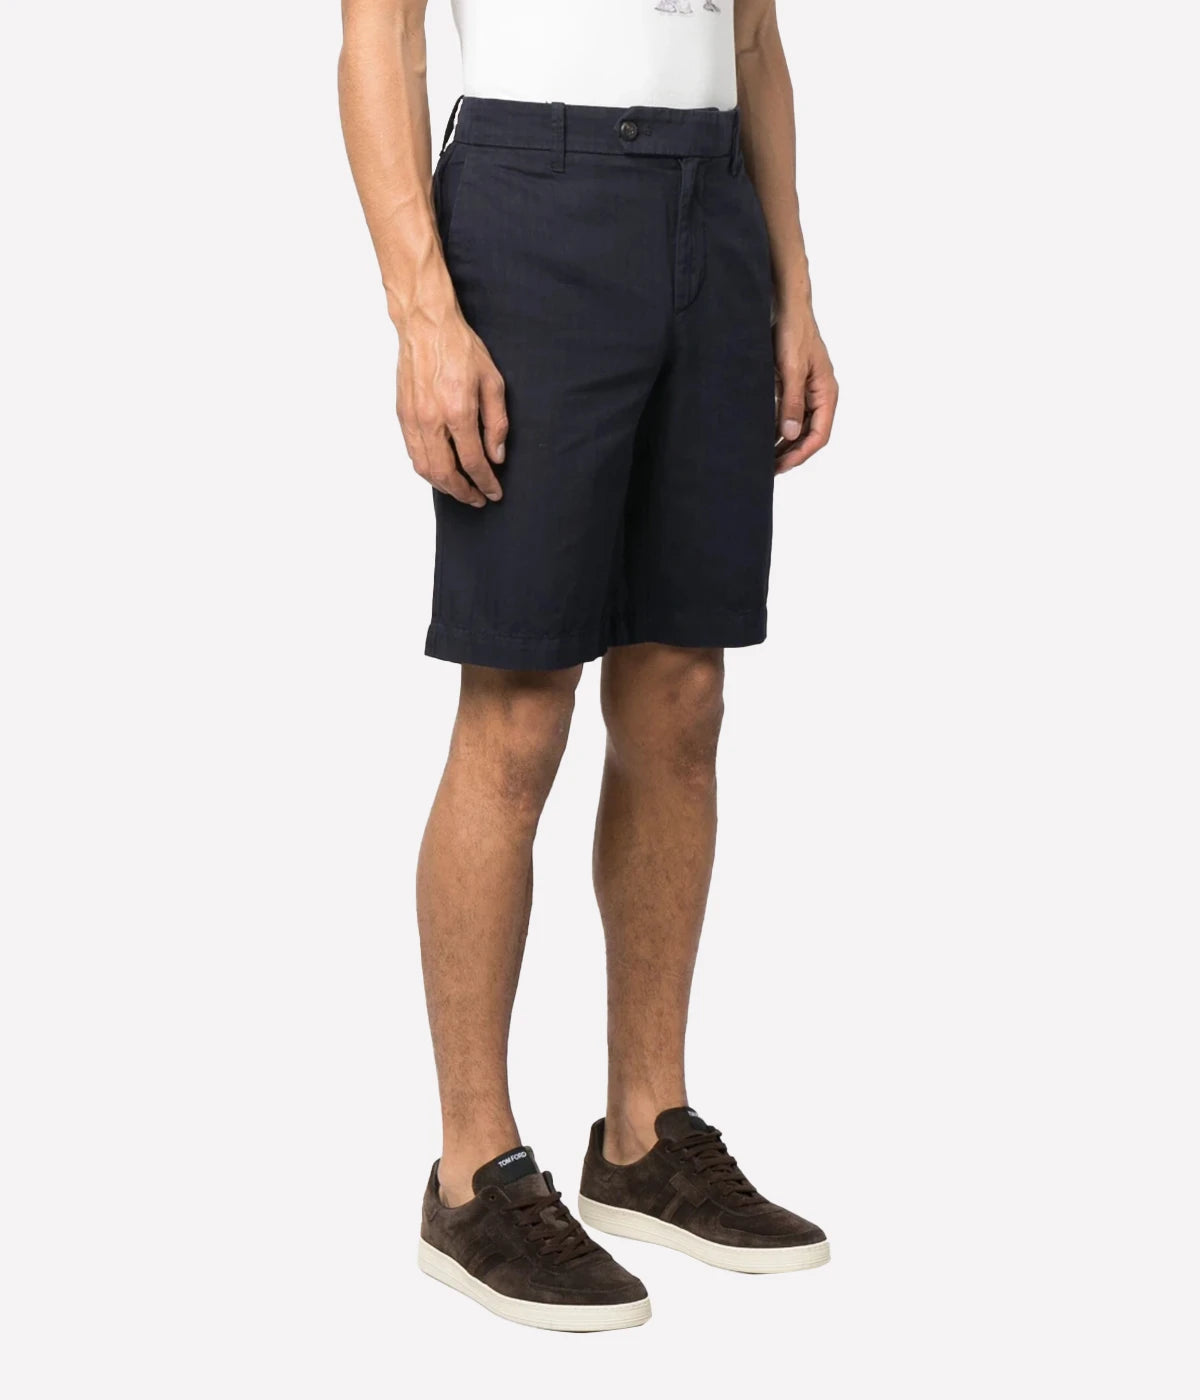 Bermuda Shorts in Denim